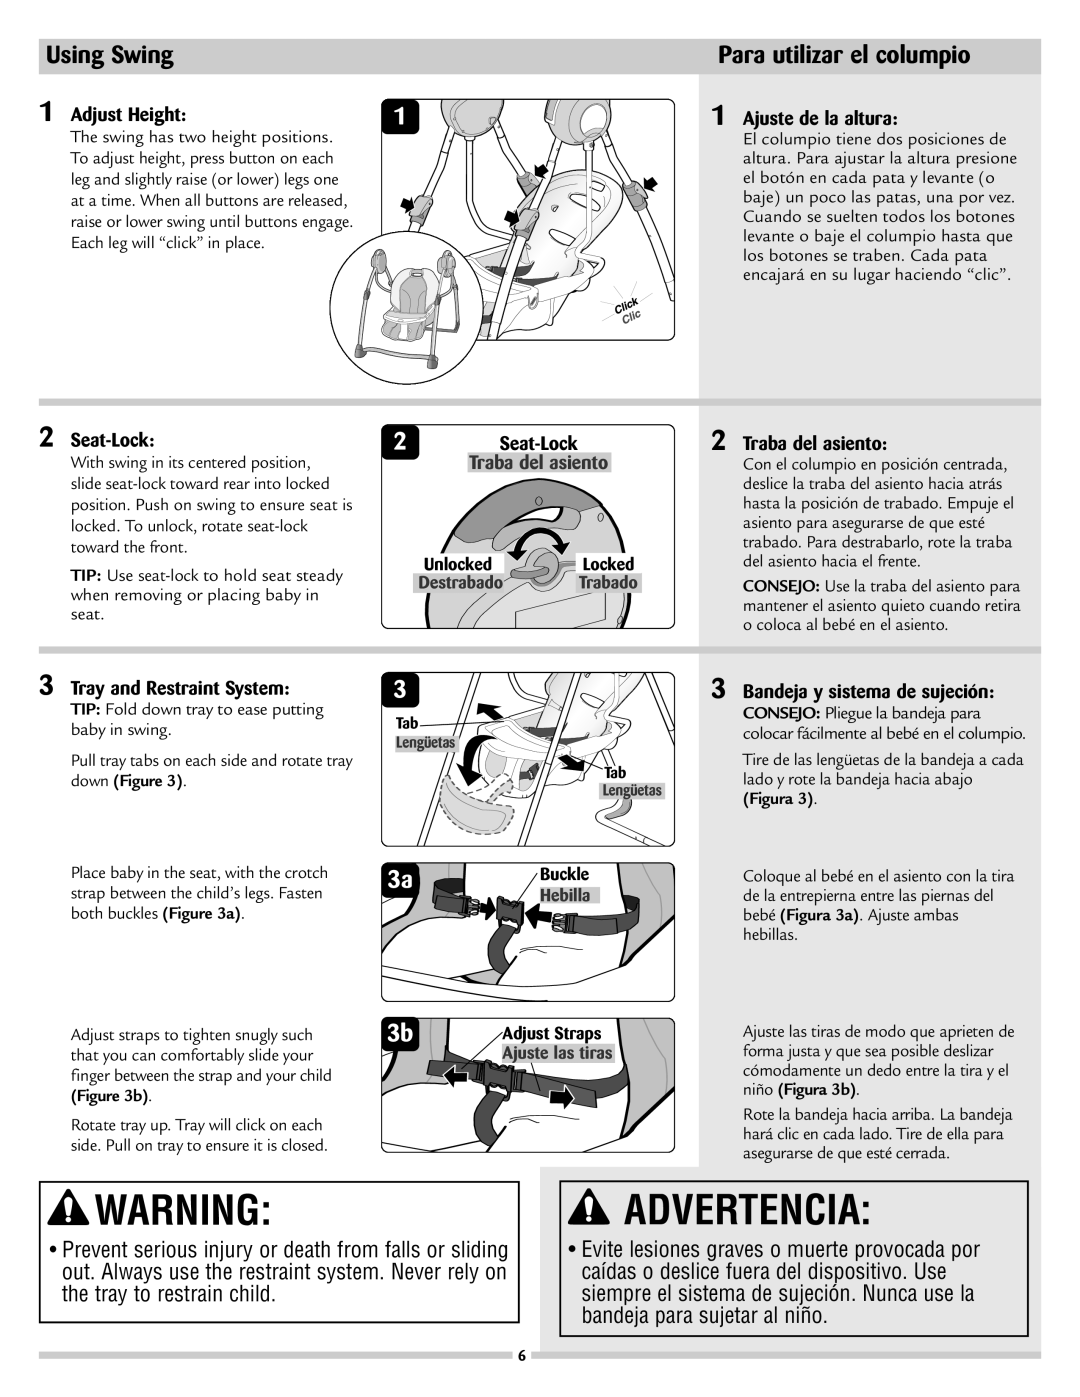 Disney 53020 manual Using Swing, Para utilizar el columpio, Advertencia 